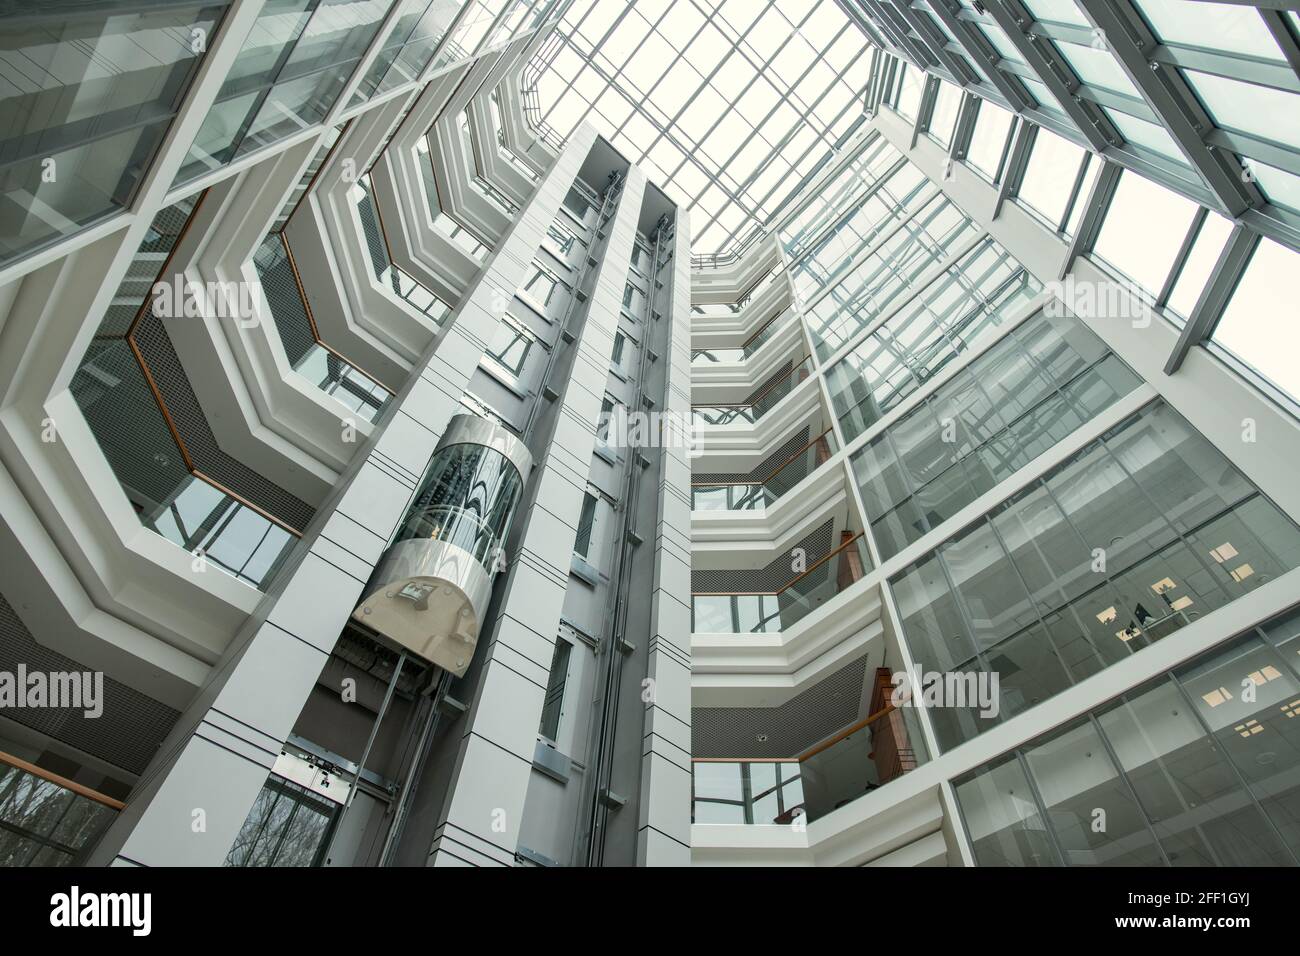 Moderne, runde Büroeinrichtung mit Aufzug, der sich nach oben bewegt und mit Glasflächen ausgestattet ist Wände Stockfoto